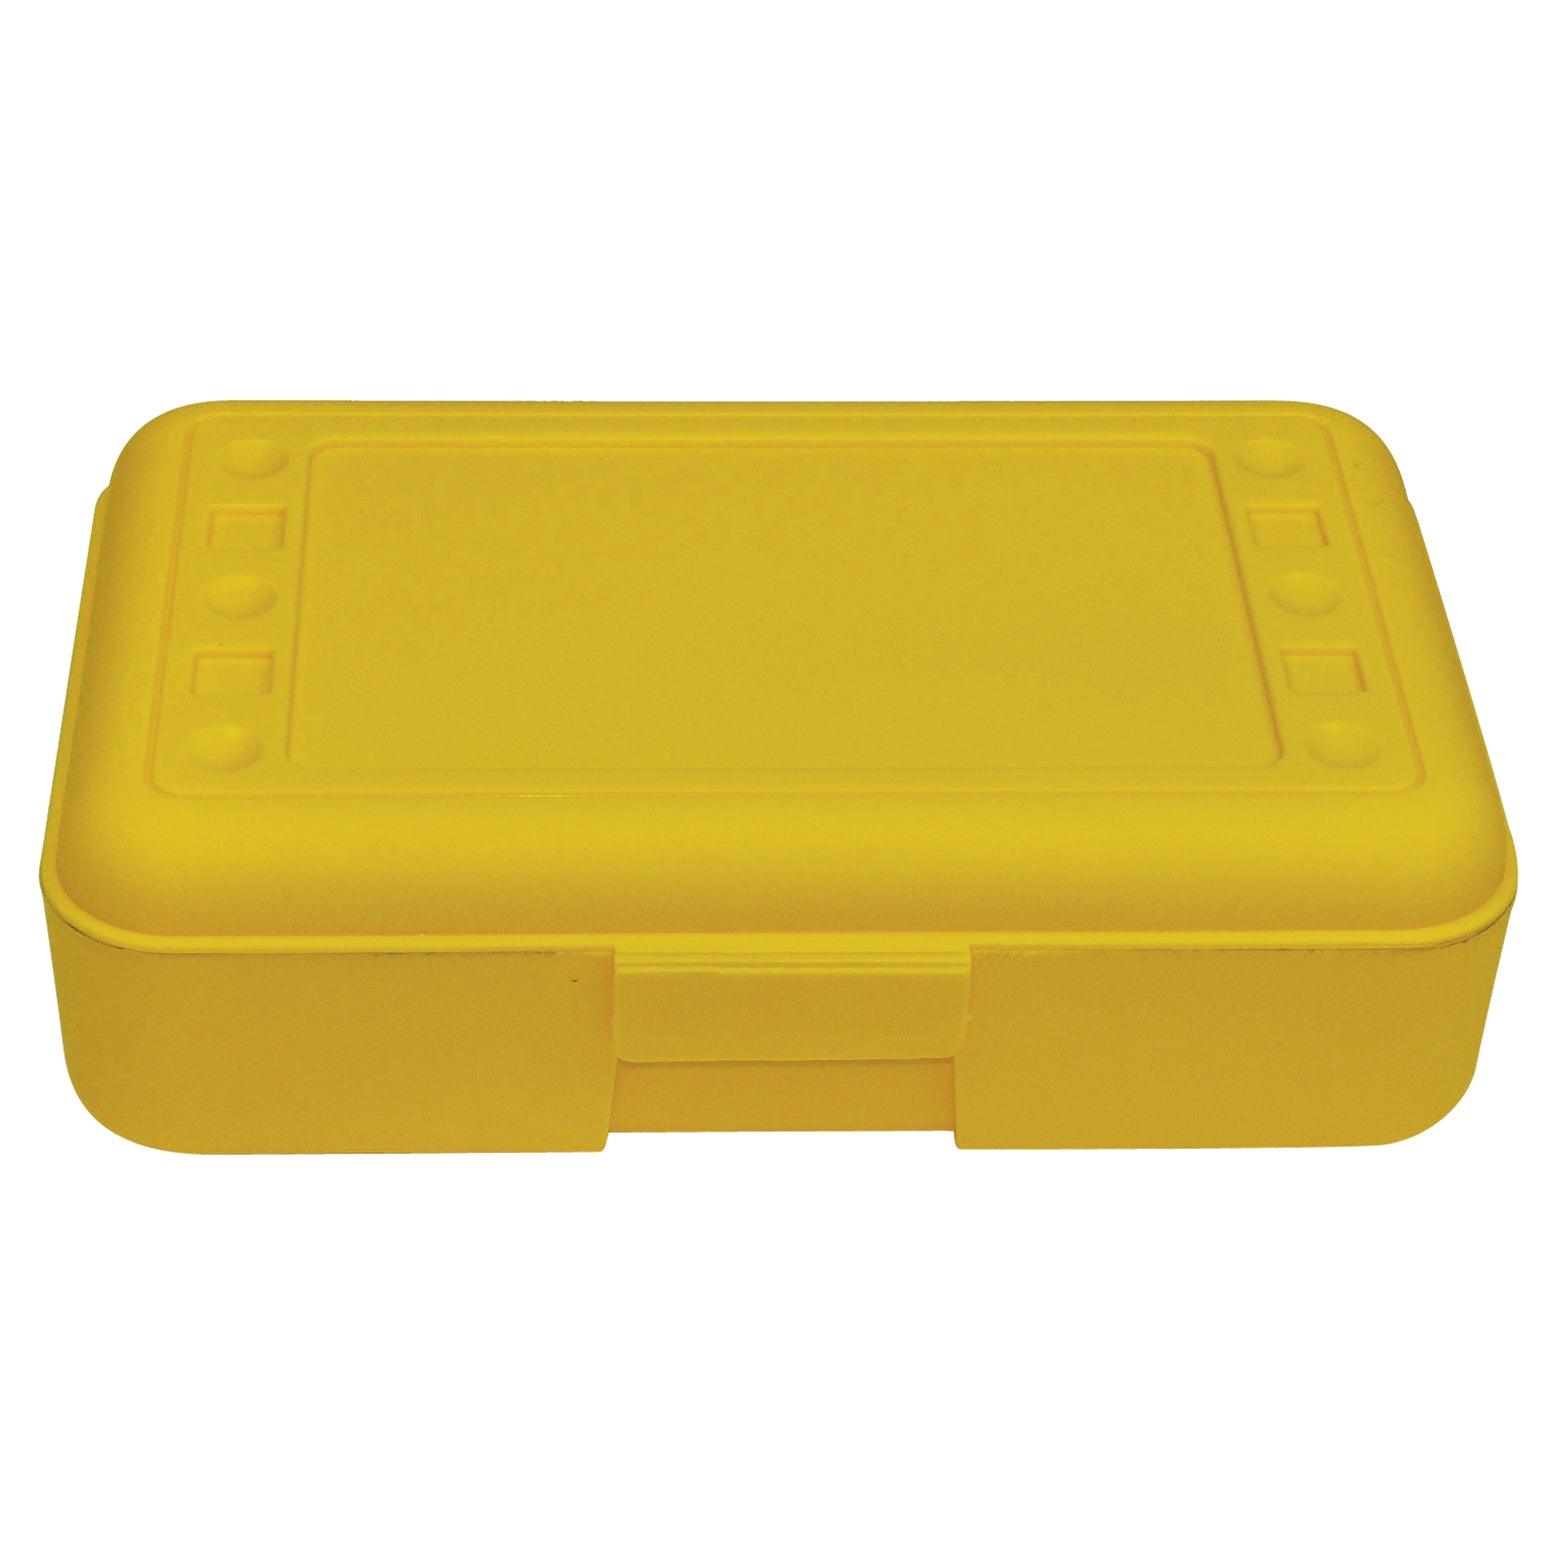 Pencil Box, Yellow, Pack of 12 - Loomini